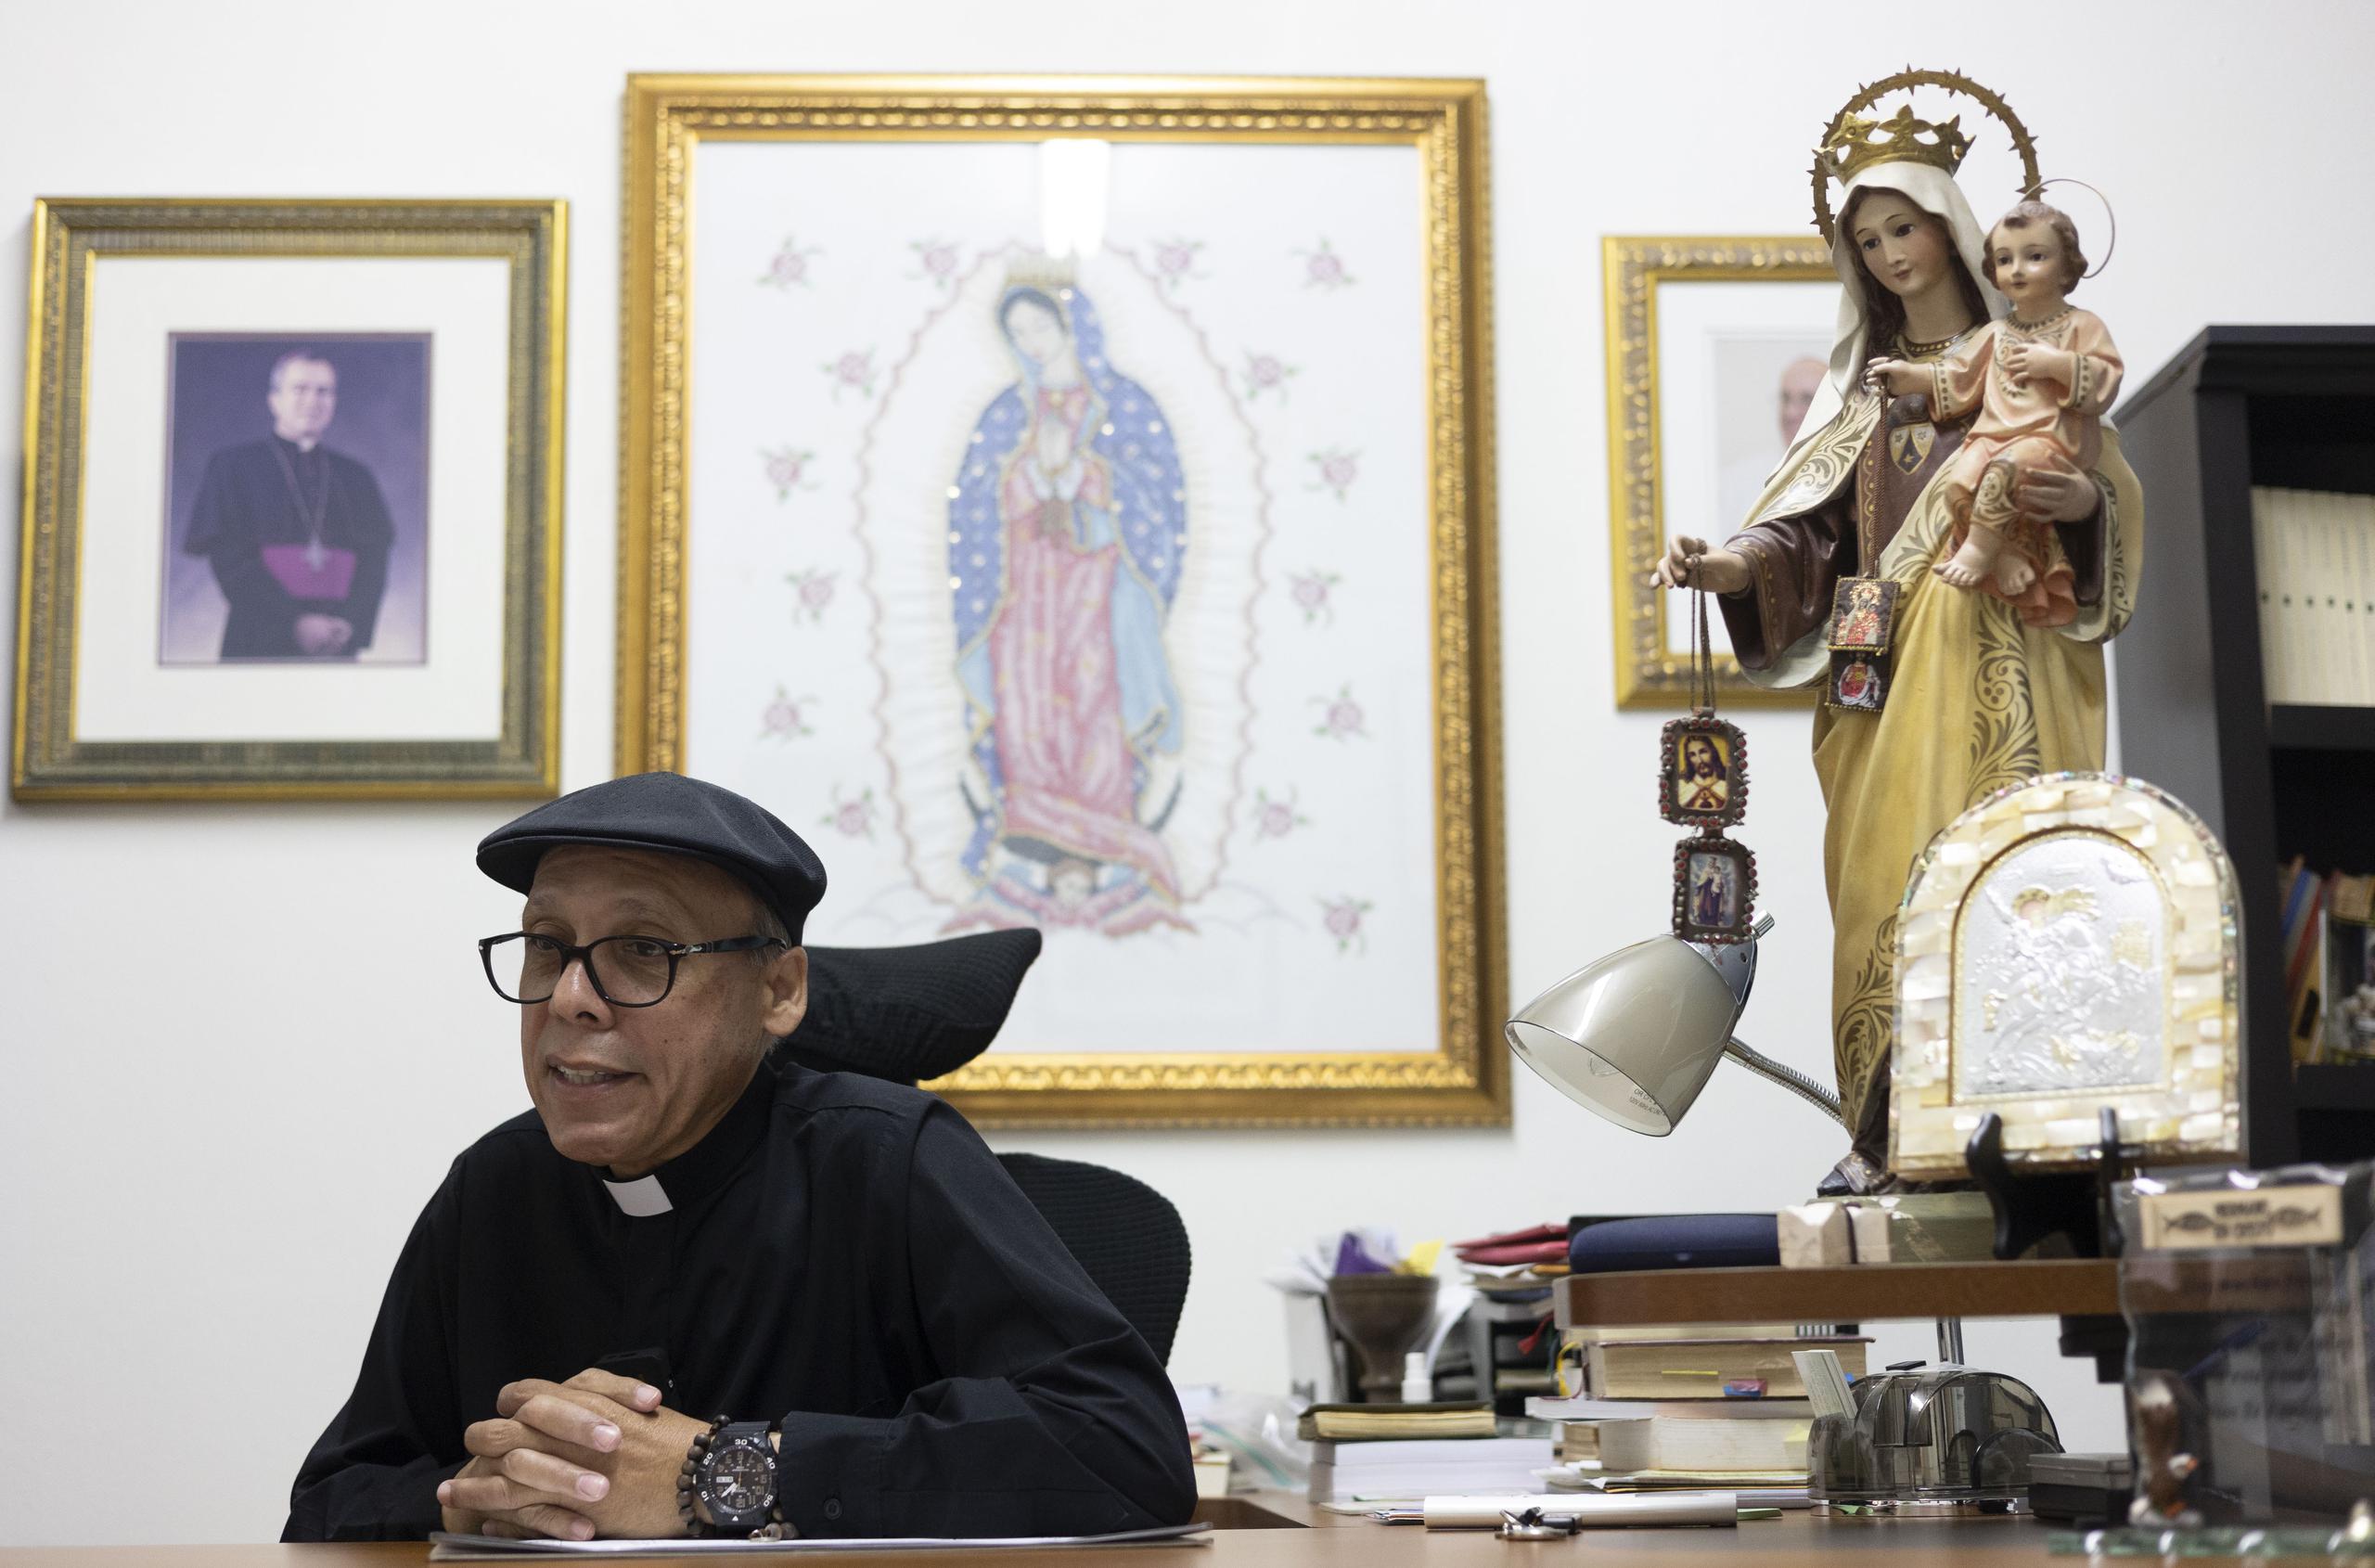 El padre Pedro Luis rememora como este santo de la Iglesia Católica marcó su vida desde 1984.

